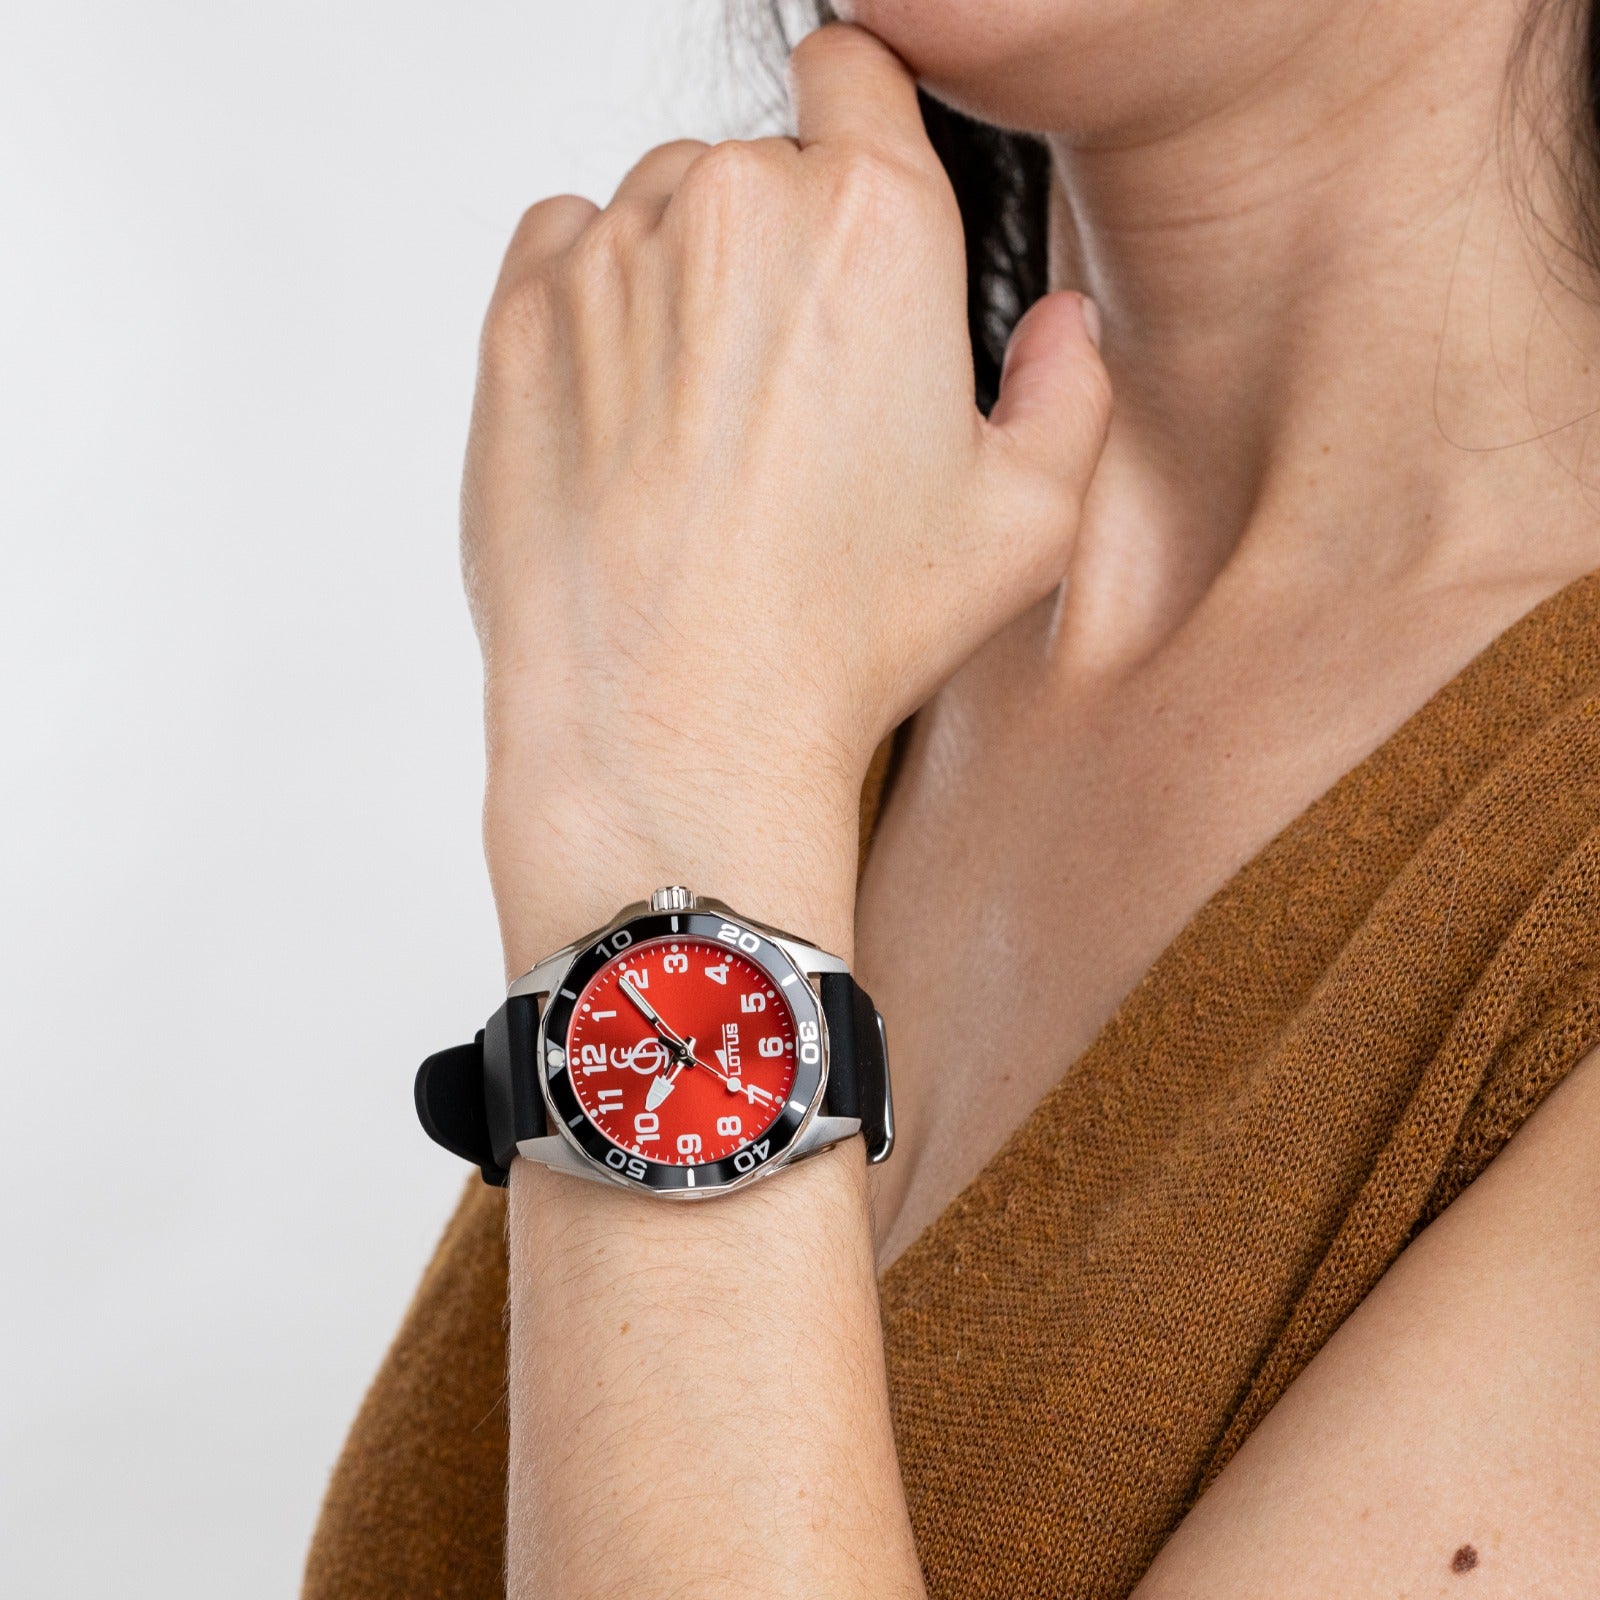 Cadet / women's red dial watch